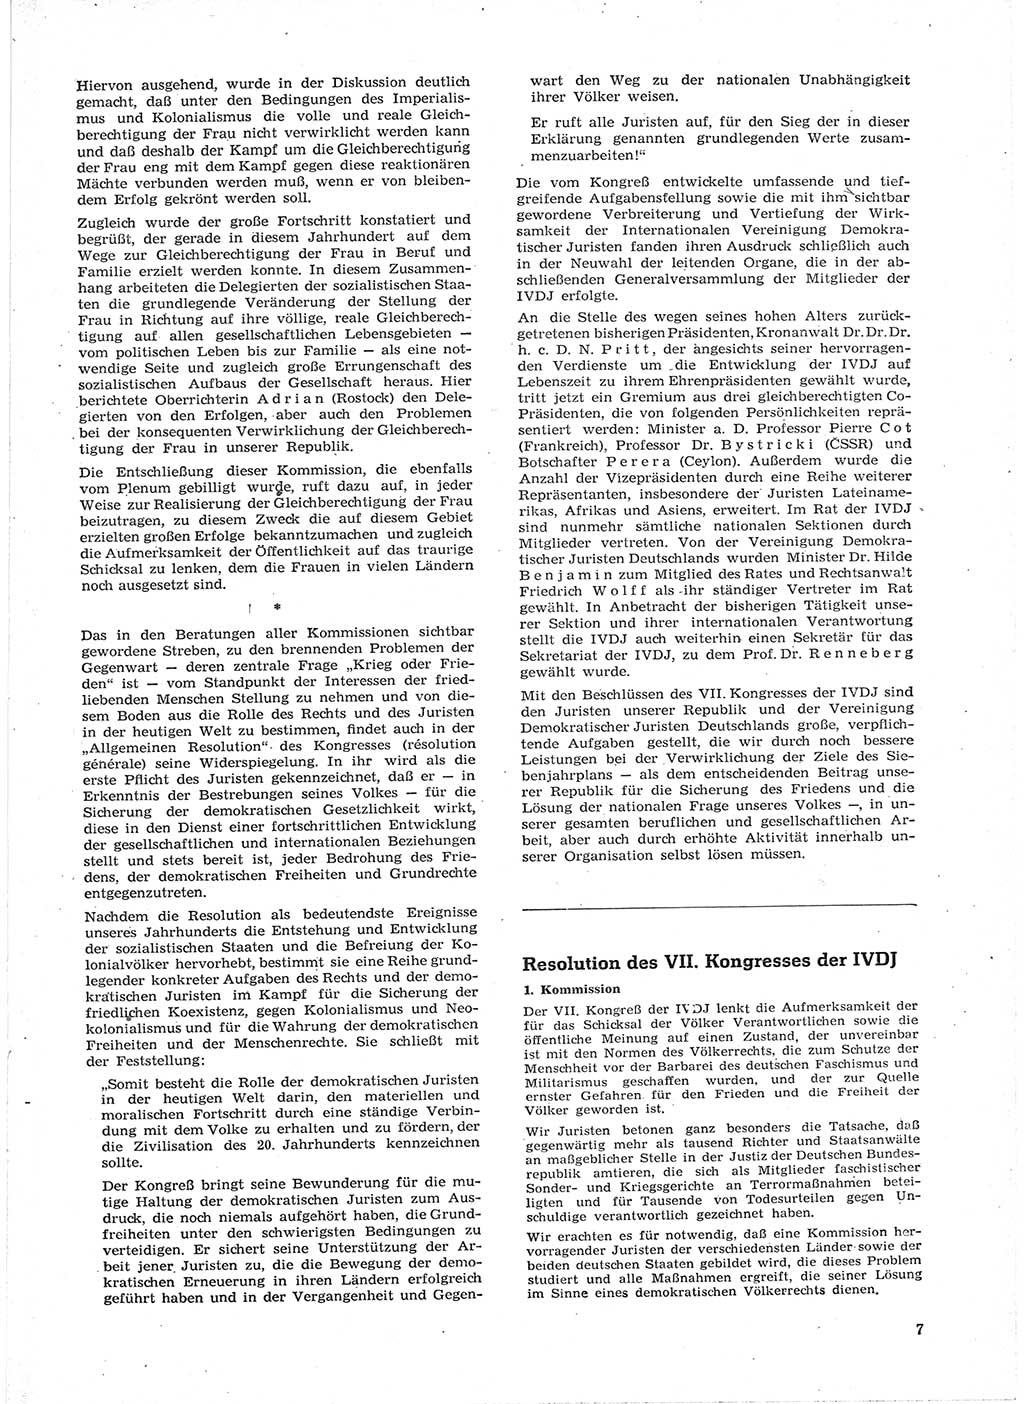 Neue Justiz (NJ), Zeitschrift für Recht und Rechtswissenschaft [Deutsche Demokratische Republik (DDR)], 15. Jahrgang 1961, Seite 7 (NJ DDR 1961, S. 7)